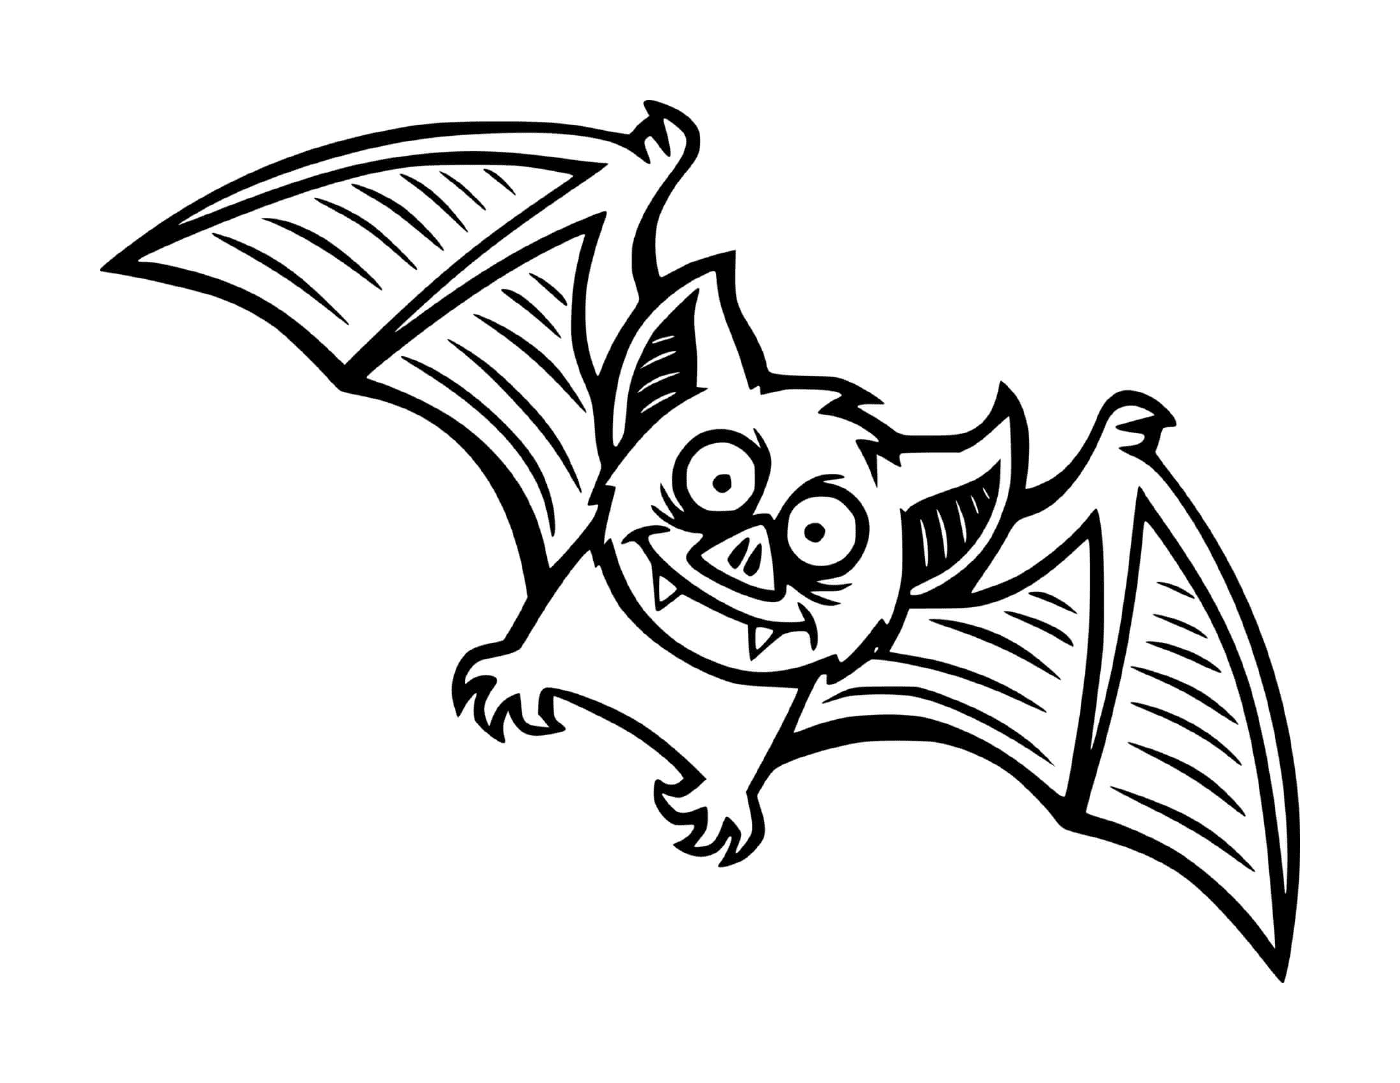  morcego pequeno na versão dos desenhos animados no meio do voo 